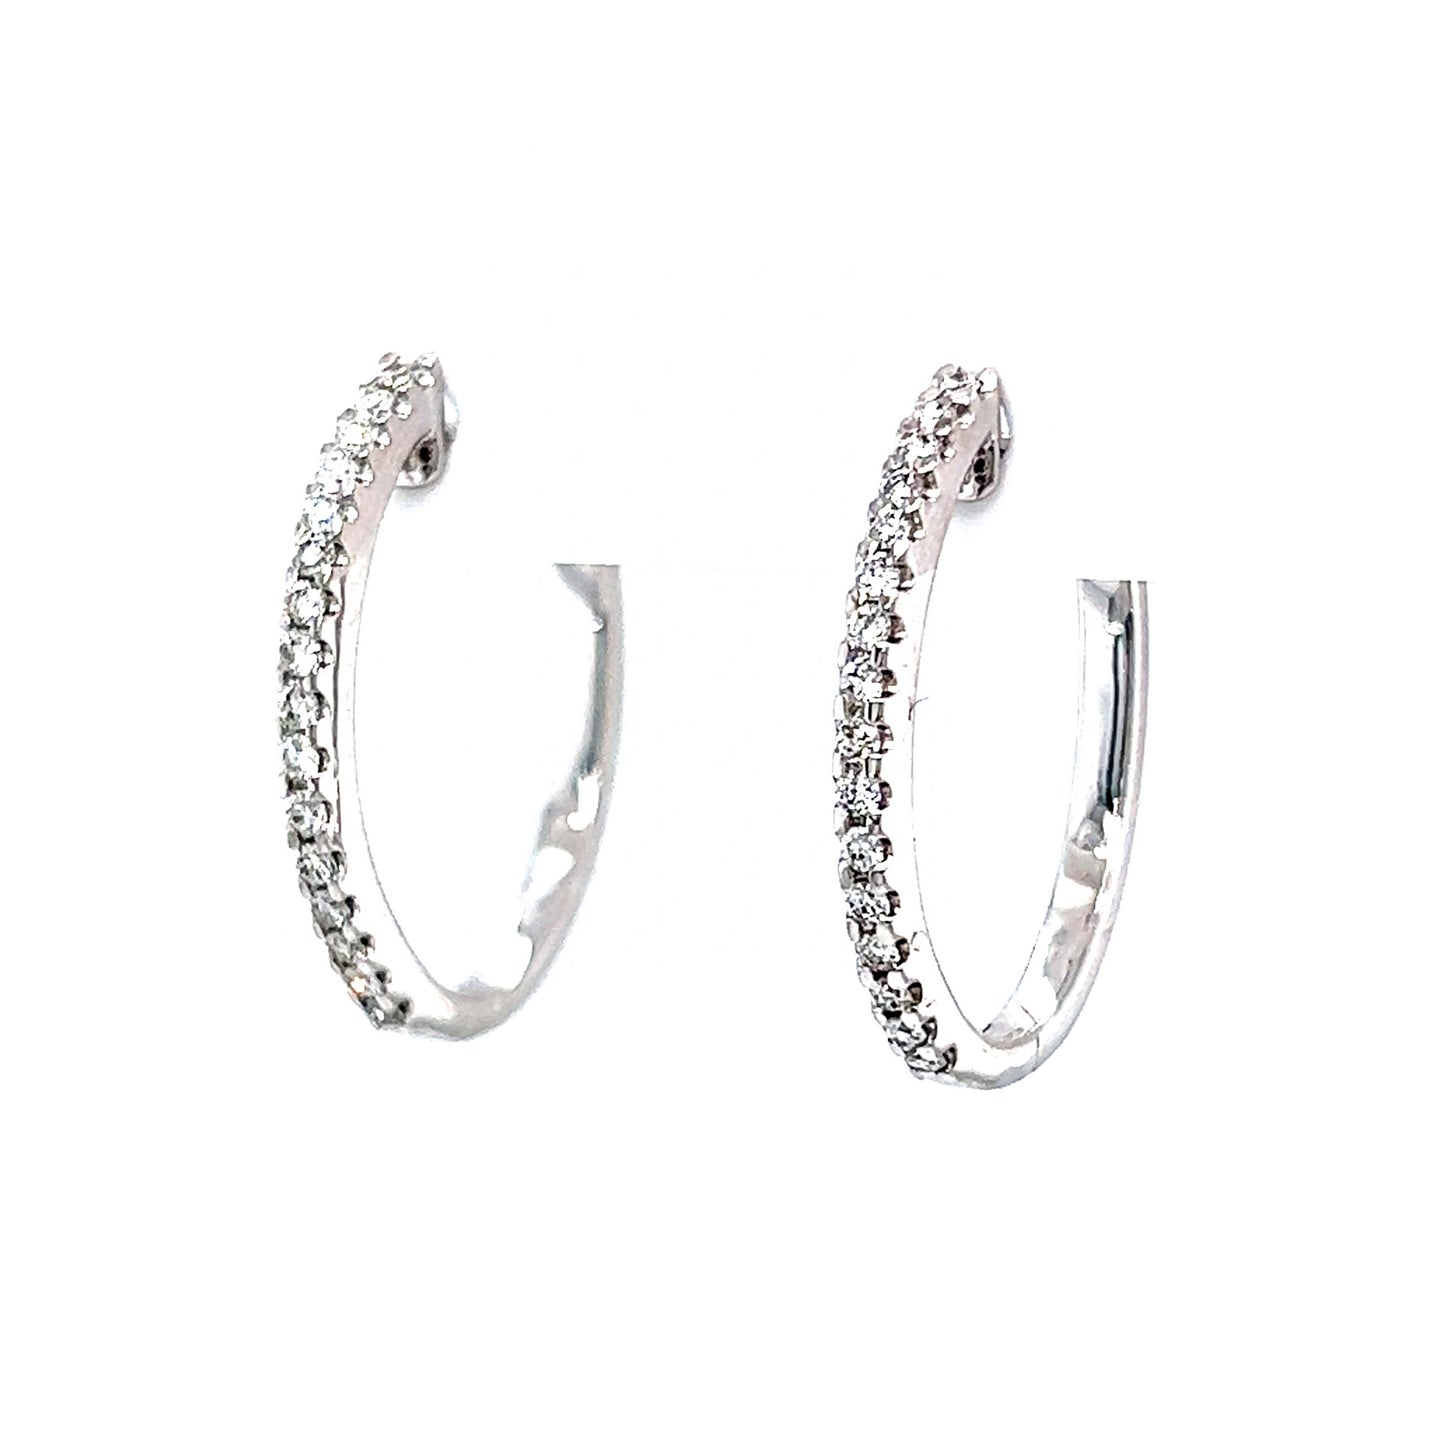 20mm Oval Diamond Hoop Earrings in 14k White Gold